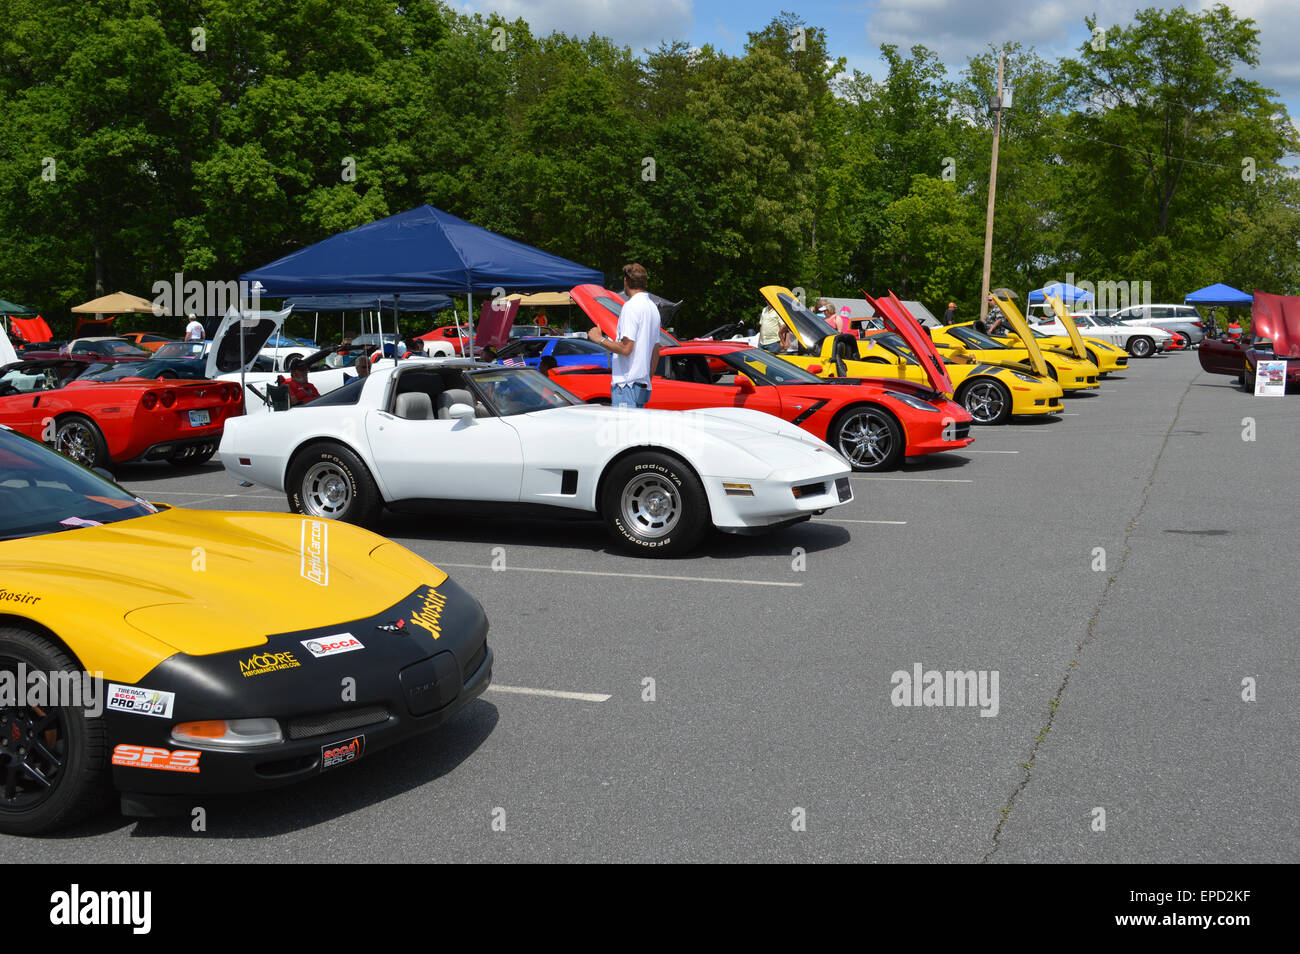 A Corvette Car Show showing all vintages of Corvettes. Stock Photo